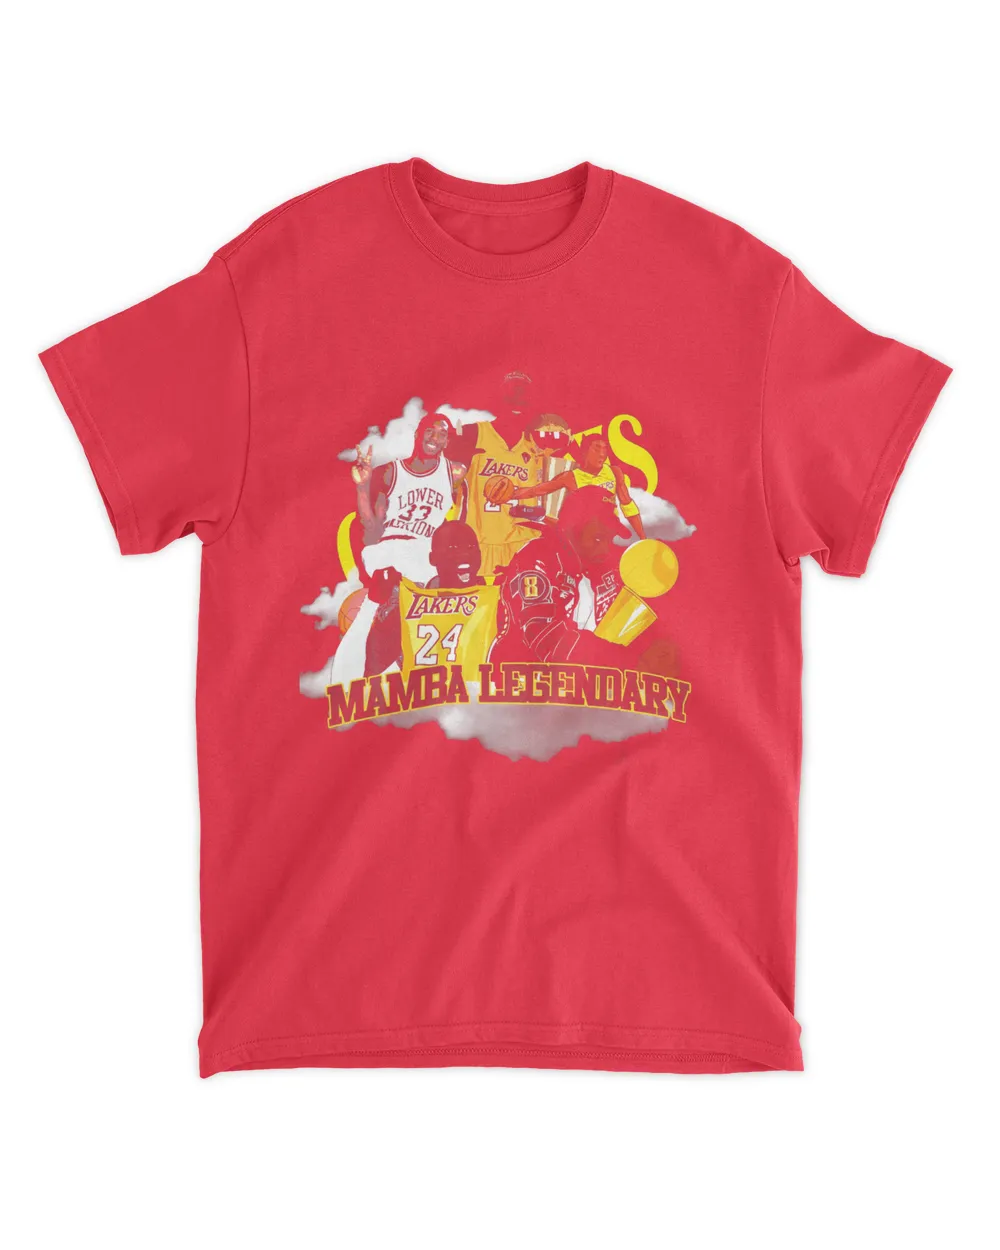 Mamba Legendary Tee Heatirvine Shirt